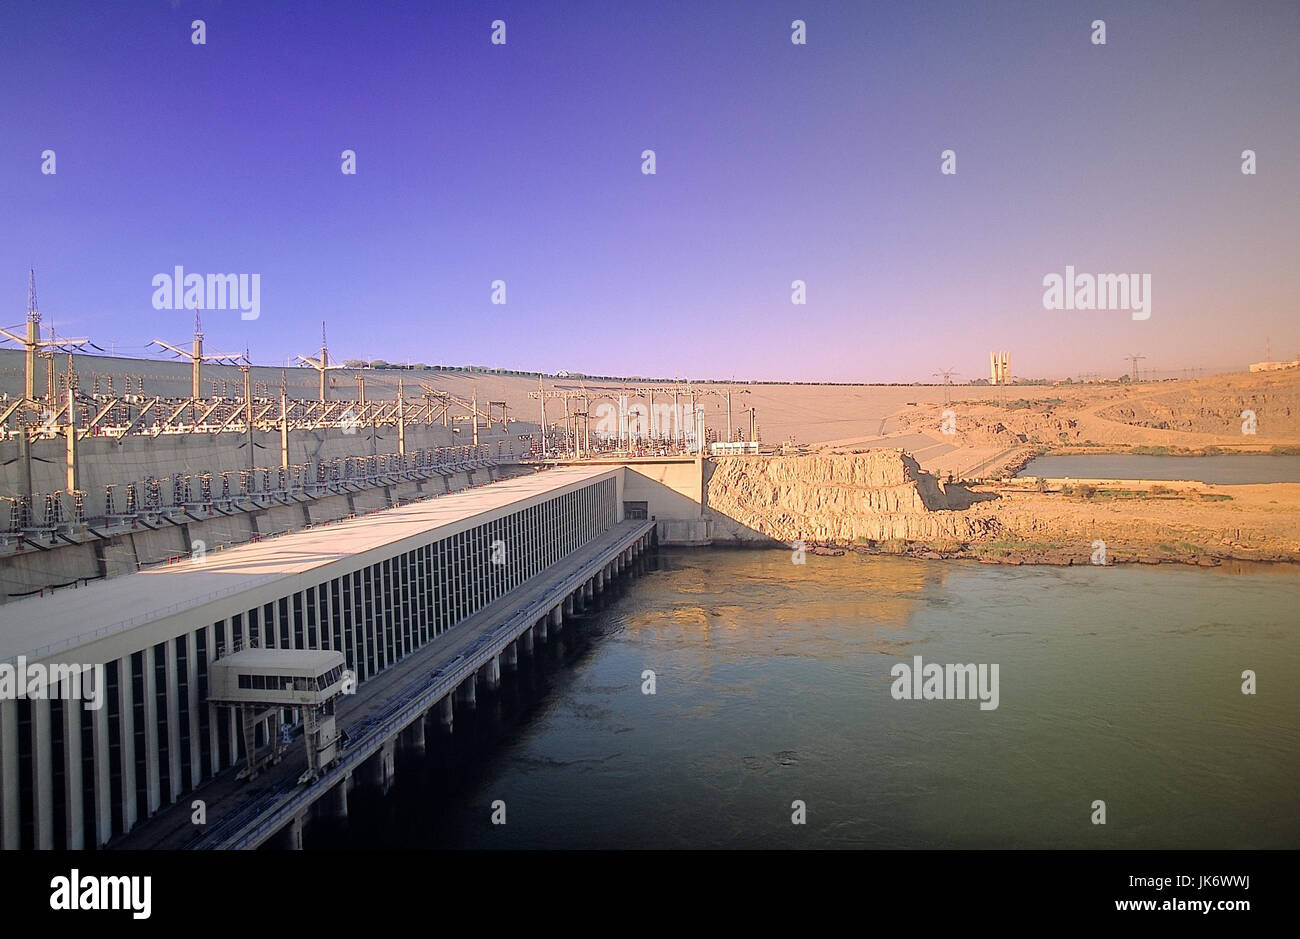 Ägypten, Assuan, Assuanhochdamm, nullo erbaut 1960-70, Staudamm, Fluss, Staumauer, Stauanlage, Wasserspeicher Foto Stock